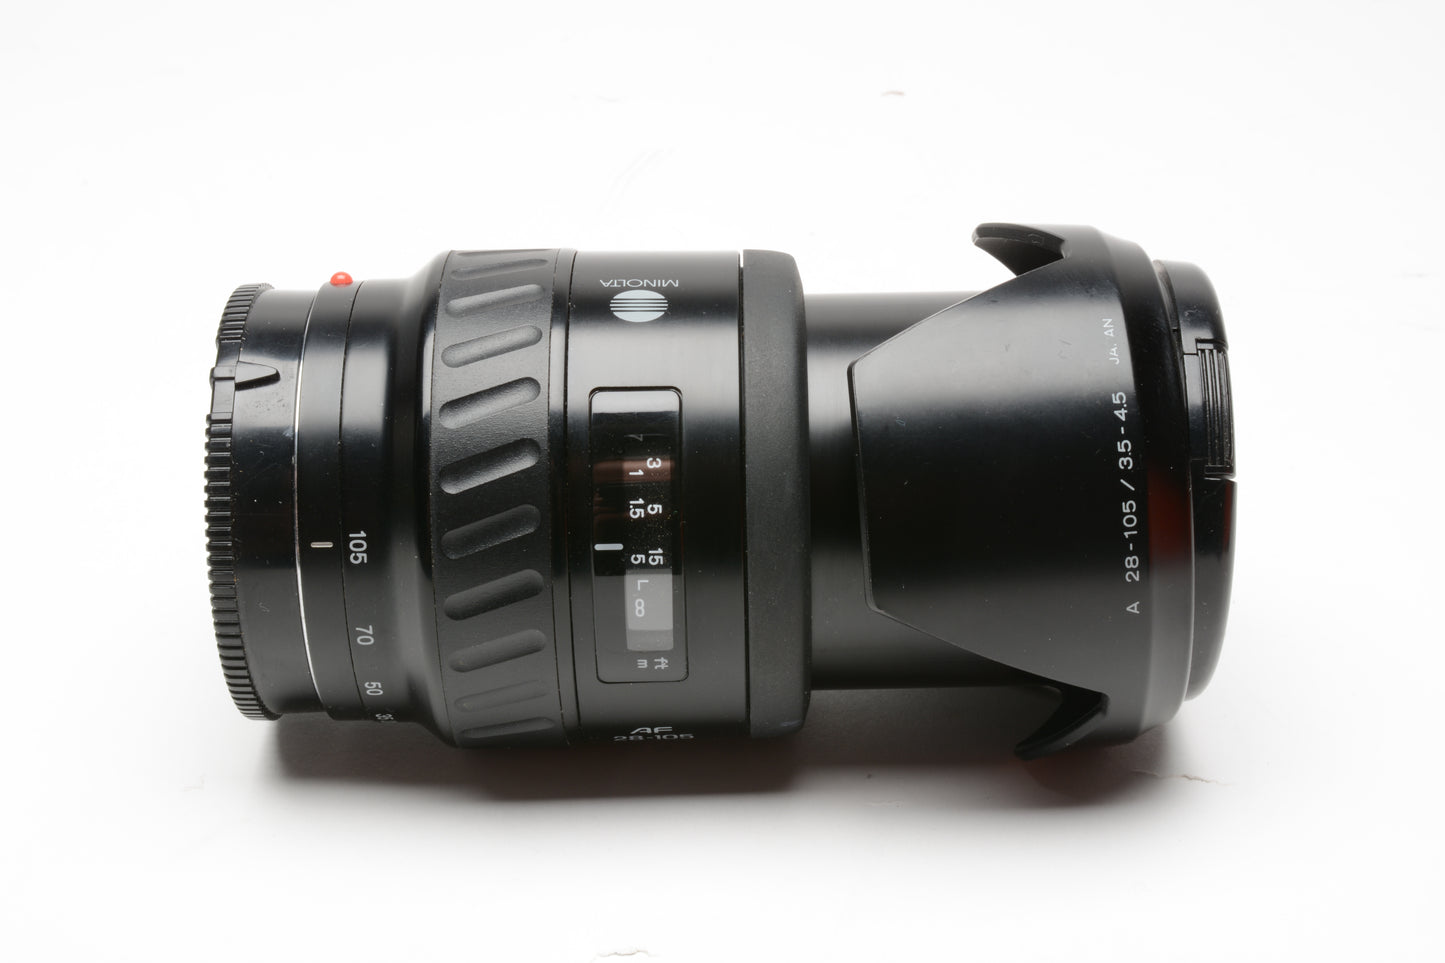 Minolta Maxxum AF 28-105mm f3.5-4.5 zoom lens, hood, caps, Sony A-Mount